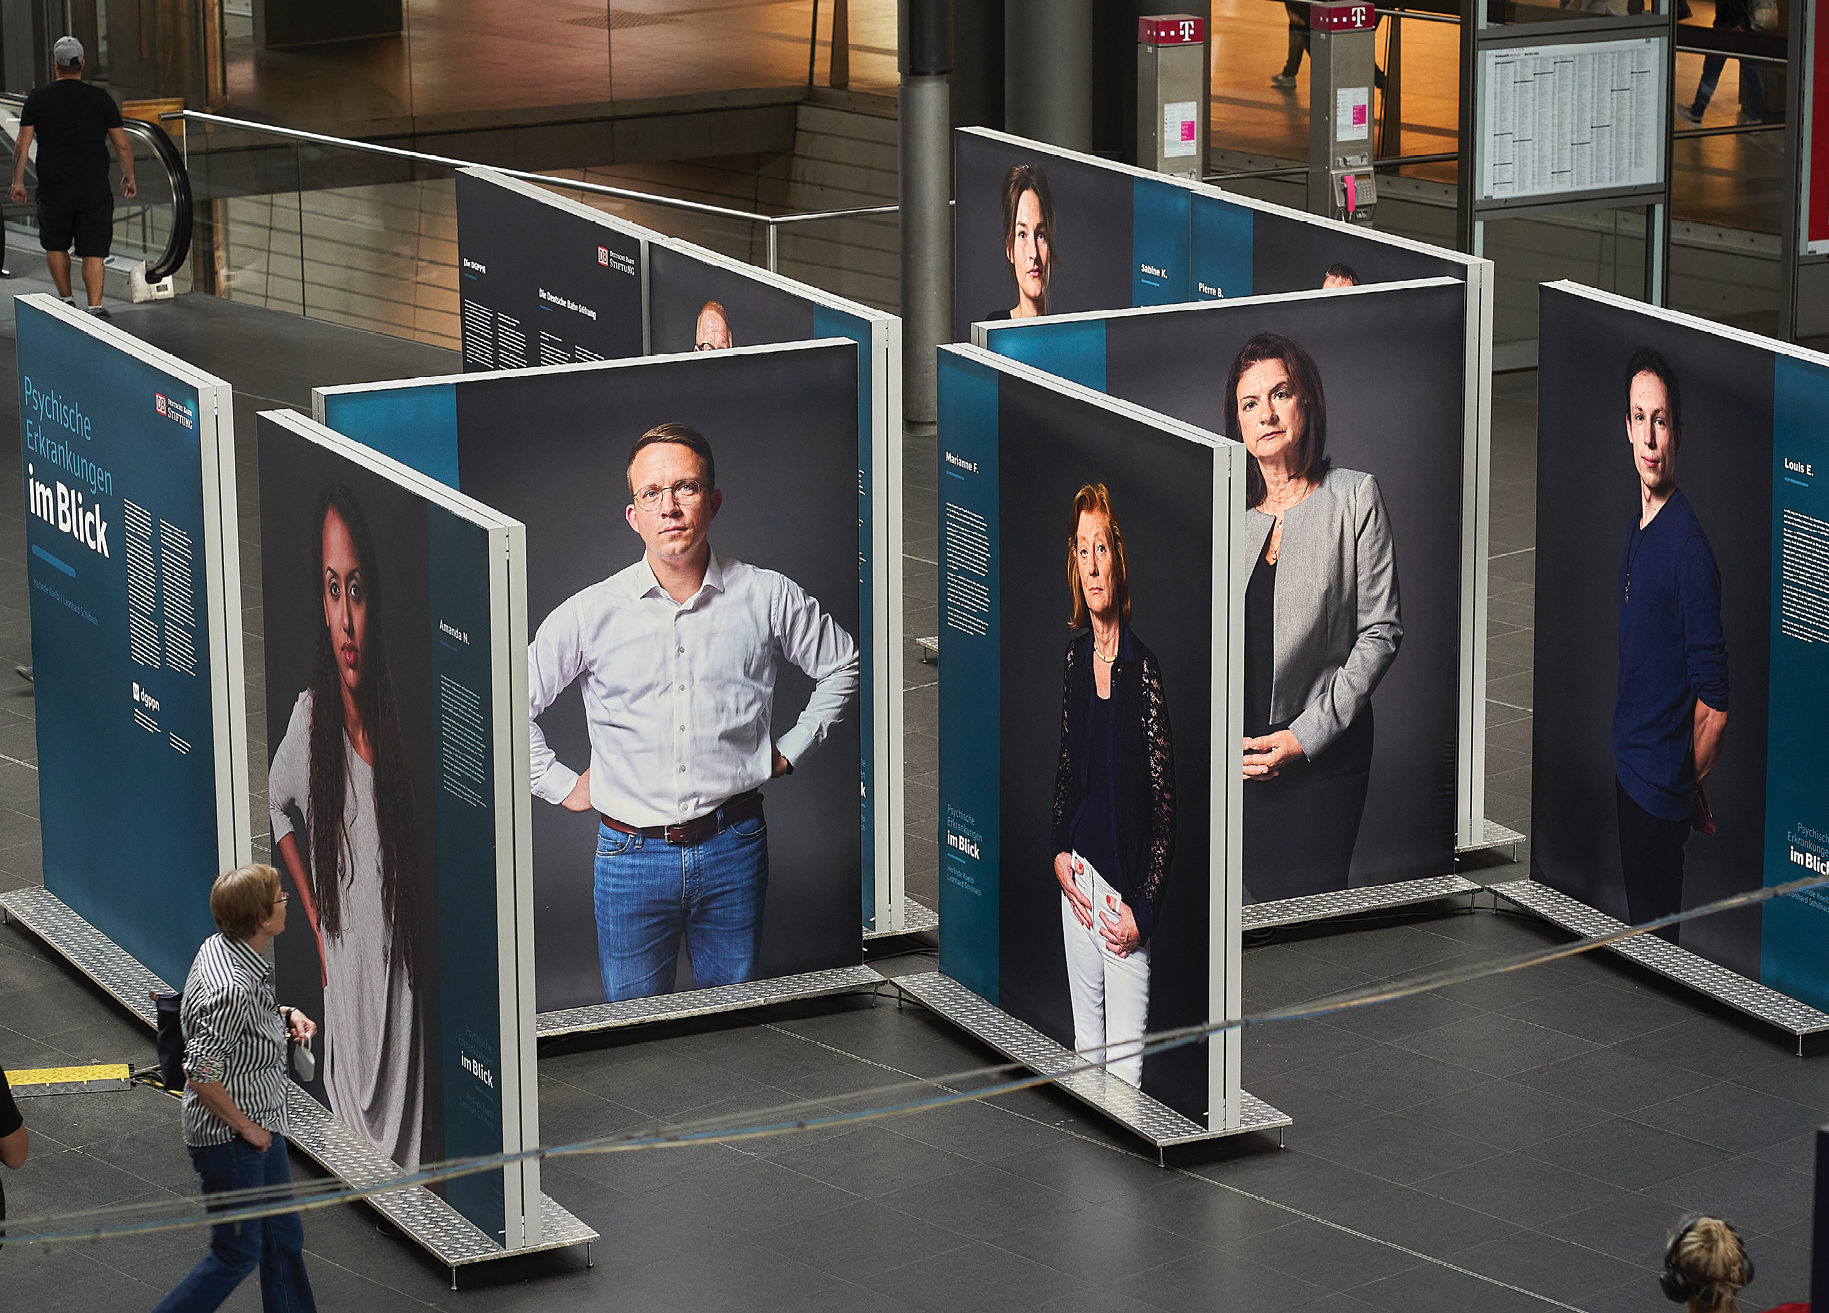 Im Herbst 2022 zeigt die Deutsche Bahn Stiftung die Ausstellung „Psychische Erkrankungen im Blick“ der Fotografin Herlinde Koelbl an mehreren deutschen Bahnhöfen